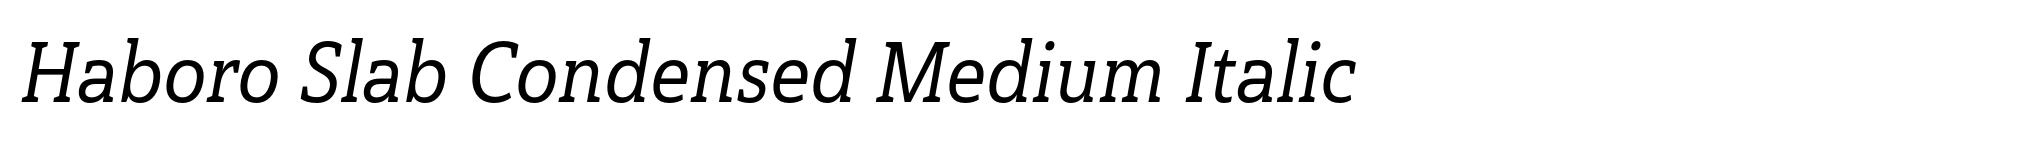 Haboro Slab Condensed Medium Italic image